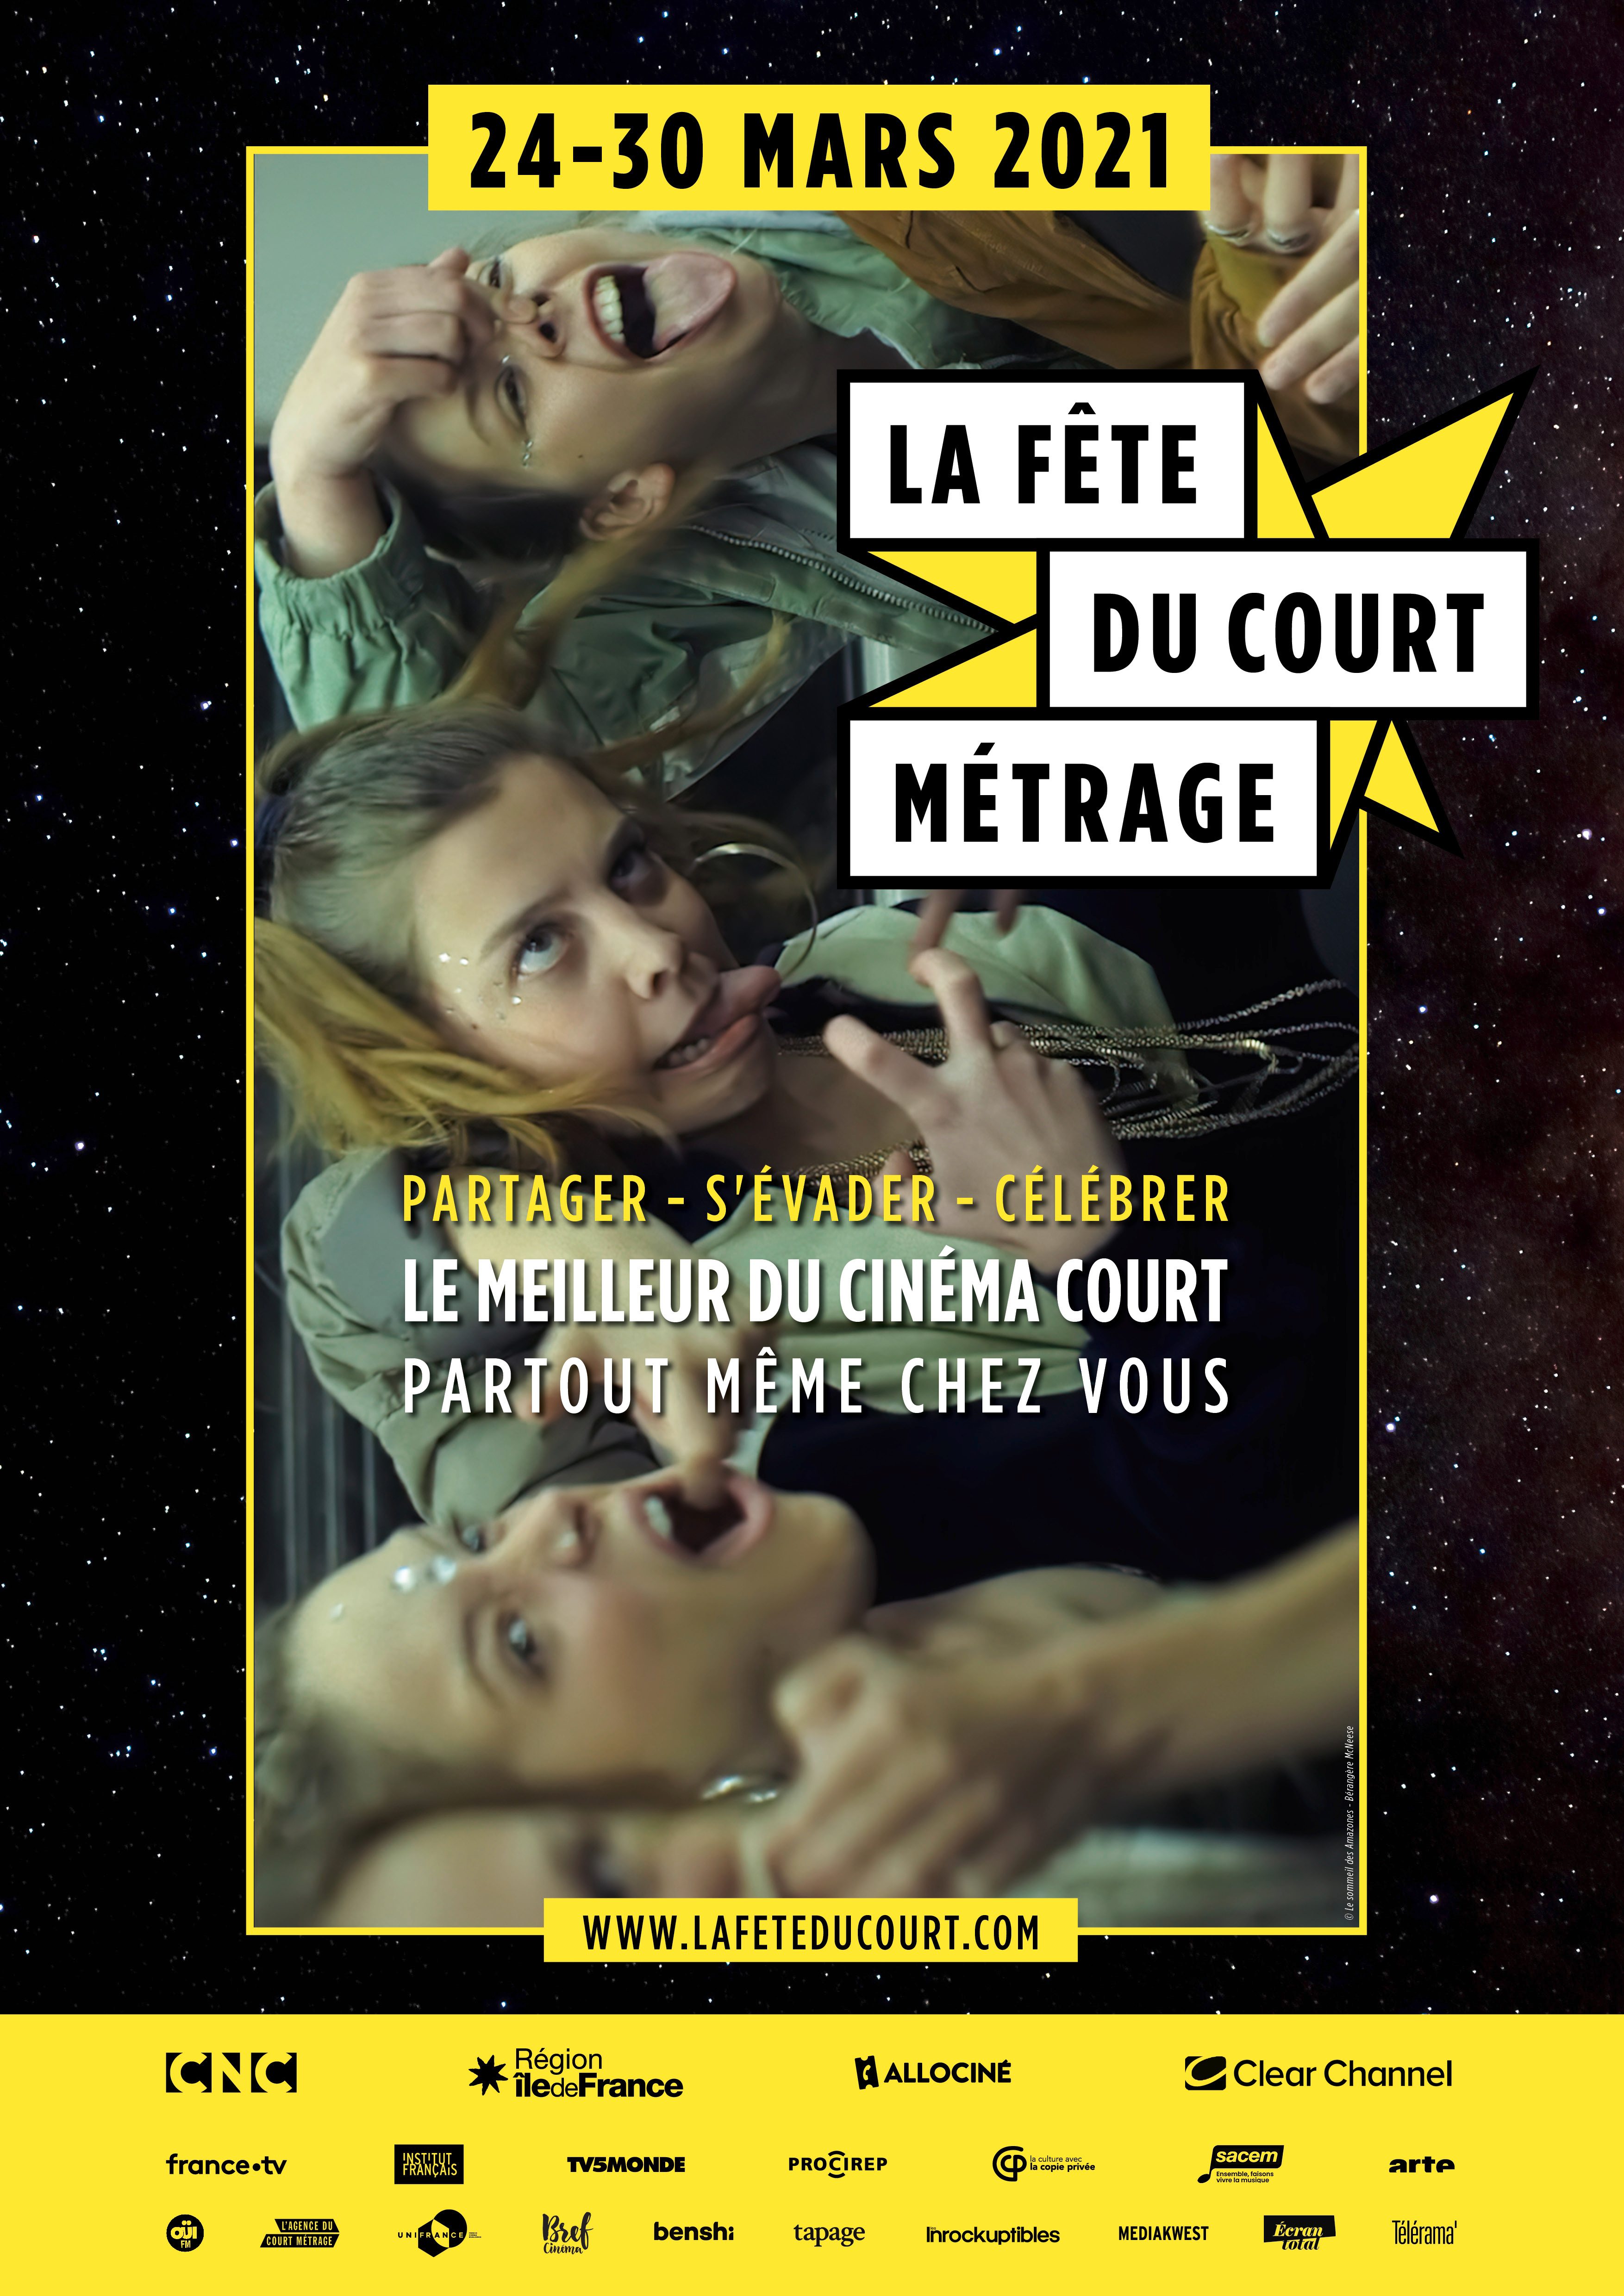 Affiche de la 5e édition de la Fête du court métrage, du 24 au 30 mars 2021. 